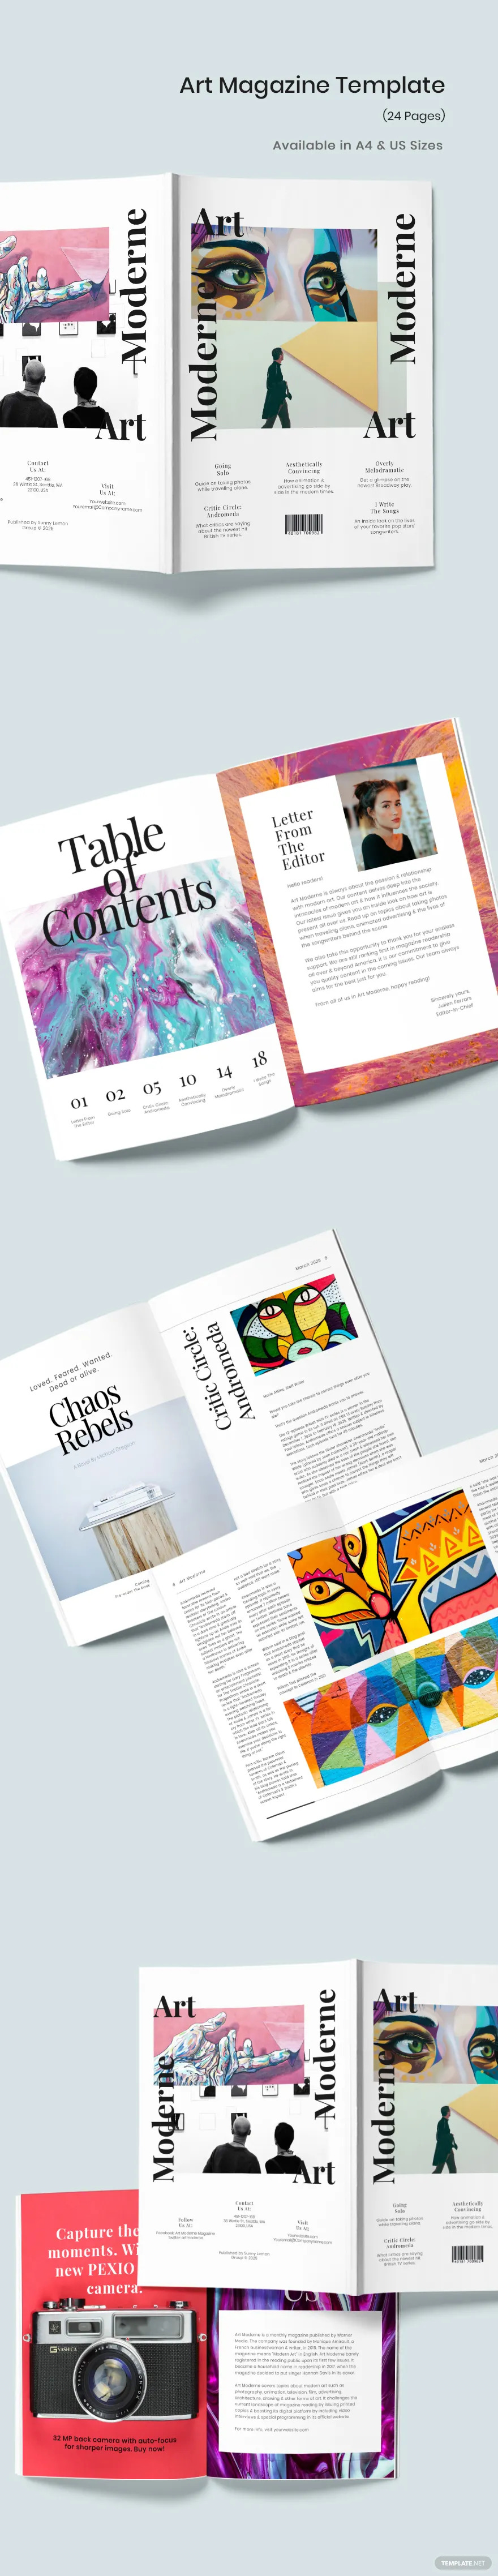 modern art magazine template